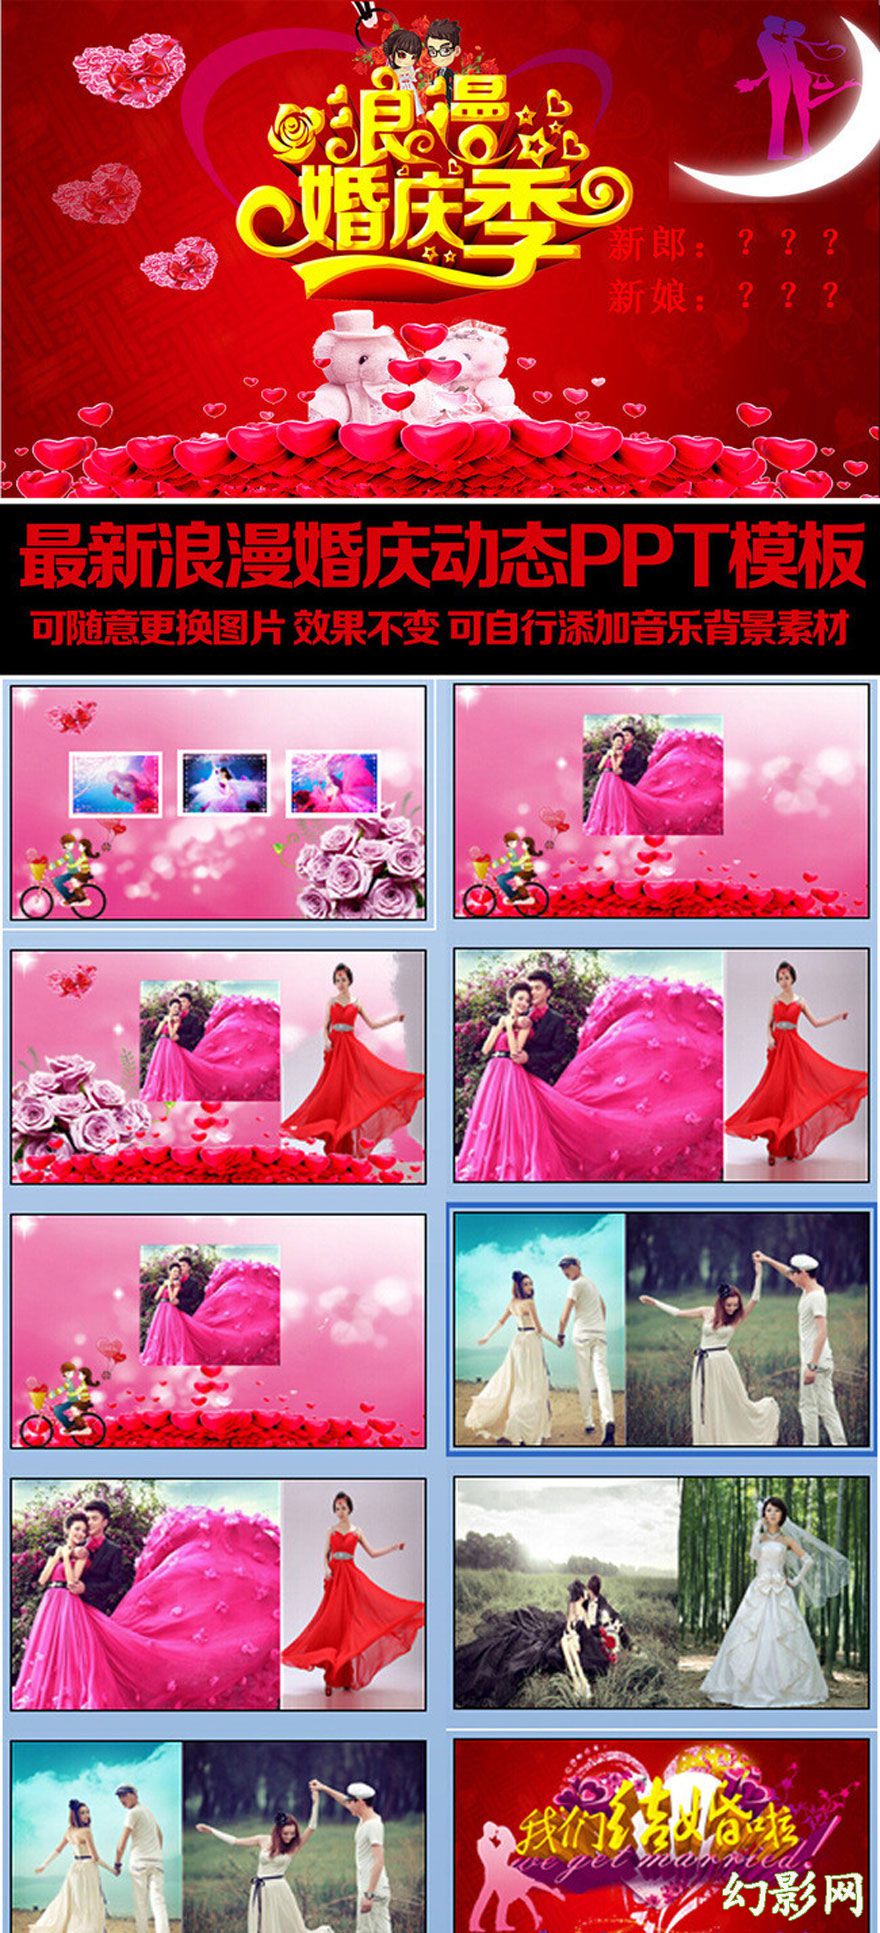 浪漫婚庆婚礼相册宣传PPT模板